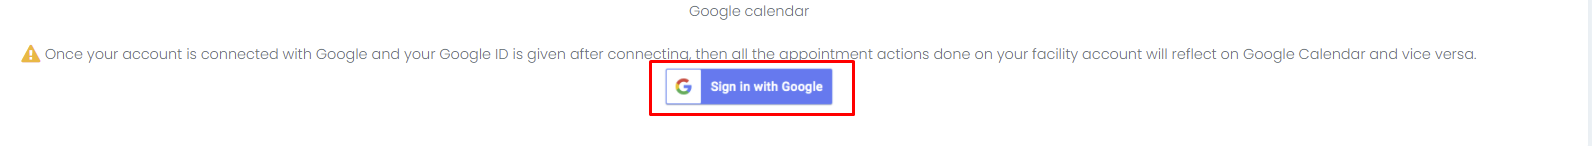 google authentication - Google connect button 